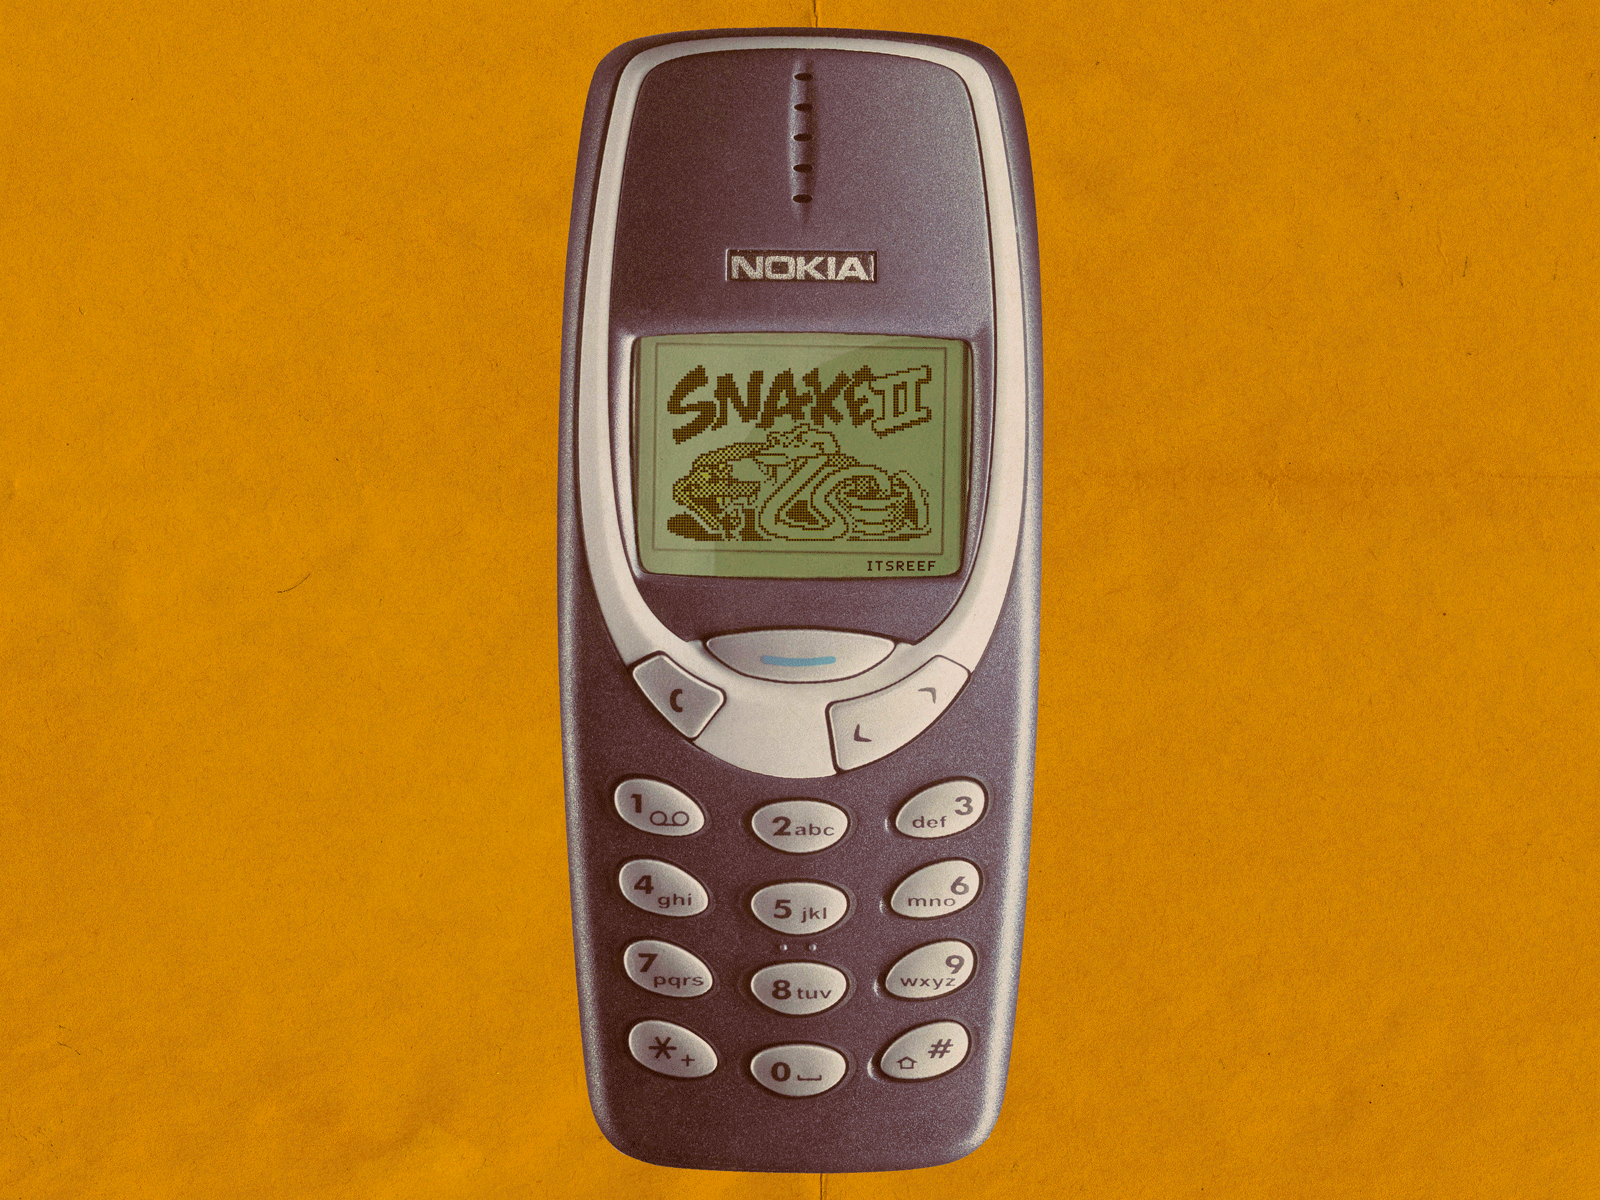 Nokia's Snake